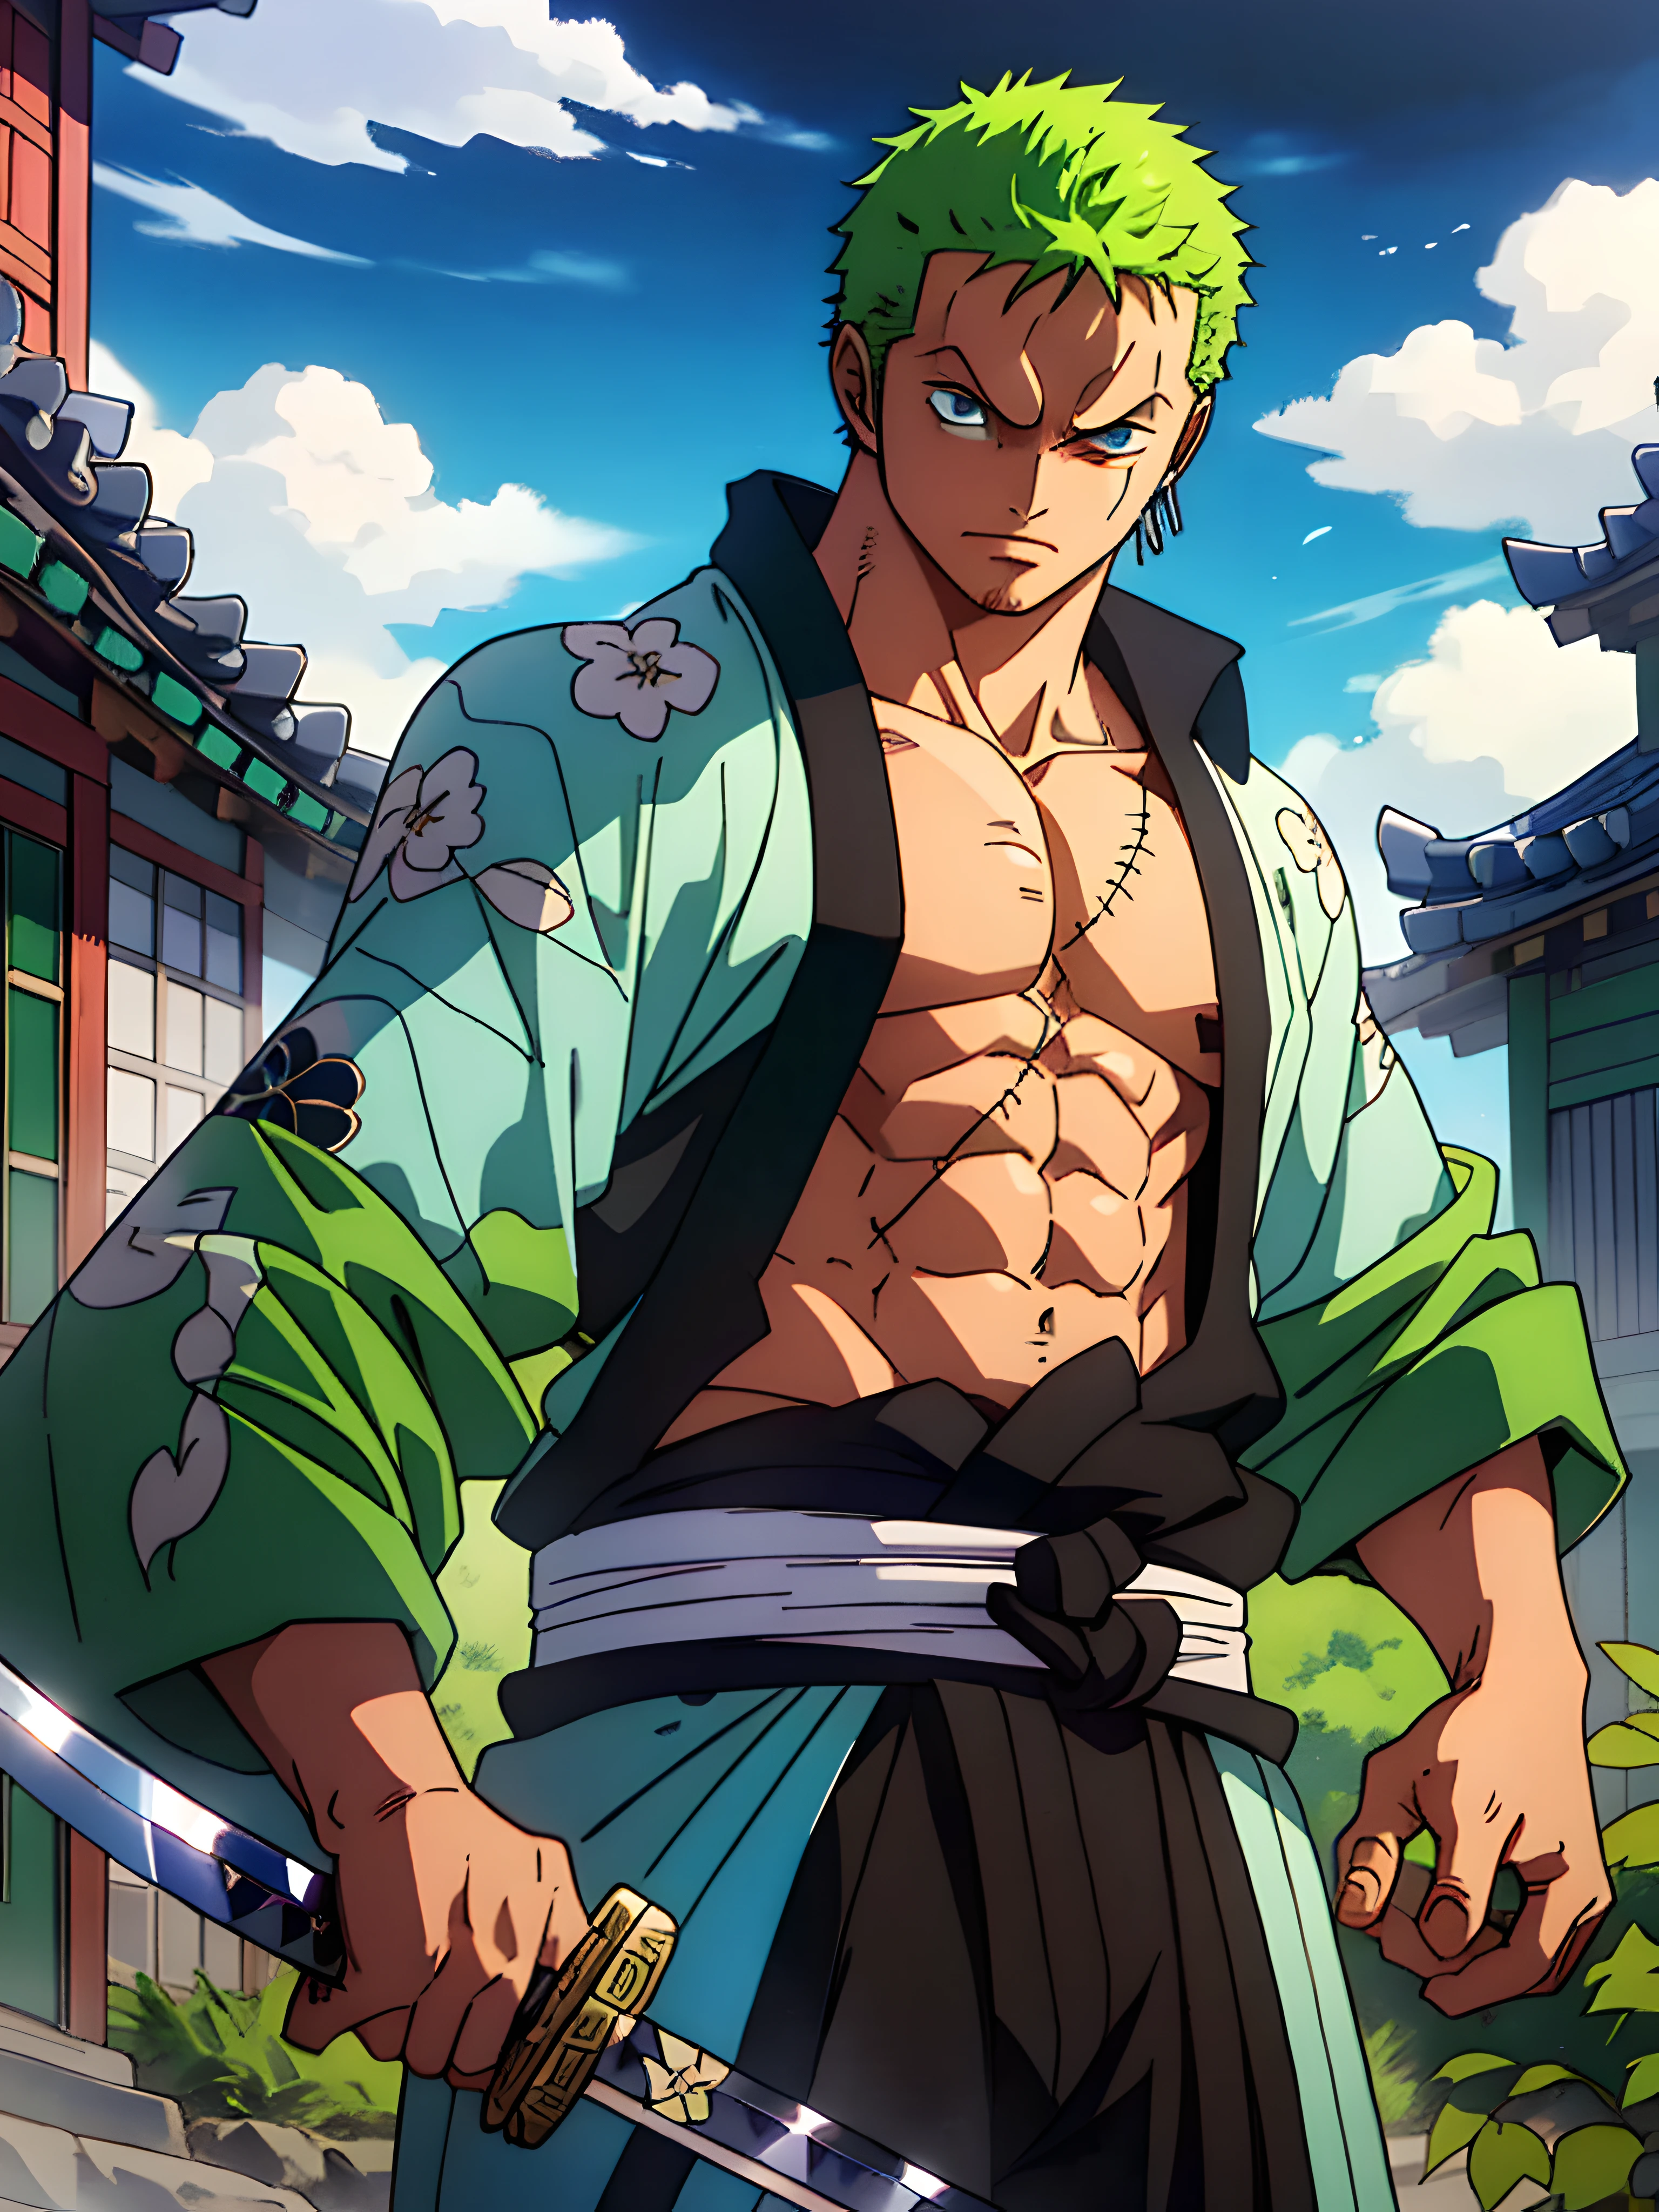 Roronoa Zoro (Obra de arte, Resolução 4k, ultra-realistic, Muito detalhado), (Tema do samurai branco, carismático, há um espadachim ao lado de um japonês "andar de" bar, vestindo um quimono azul com detalhes de nuvens no "coração" acompanhar, ele é comandante da primeira divisão do líder do bando mugiwara, trabalhar "uma pedaço"), [ ((19 anos), (cabelo verde curto:1.2),  corpo todo, (olhos azuis:1.2), ((Roronoa Zoro's pose), demonstração de força, desembainhando com uma mão suas katanas enma), ((Ambiente rural japonês):0.8)| (paisagem rural, ao entardecer, luzes dinâmicas), (sol cego)), 1 katana]. # Explicação: Prompt descreve principalmente uma pintura 4K de ultra-alta definição, muito realista, Muito detalhado. Mostra um espadachim, mestre do estilo Santoryu de katanas, vestindo um quimono azul com detalhes de nuvens na cintura. O tema da pintura é um espadachim branco, segurando com uma mão sua katana preta enma, the male protagonist has cabelo verde curto, is 19 anos old and his entire defined body is shown in the painting, com características de endomorfo bombeado.